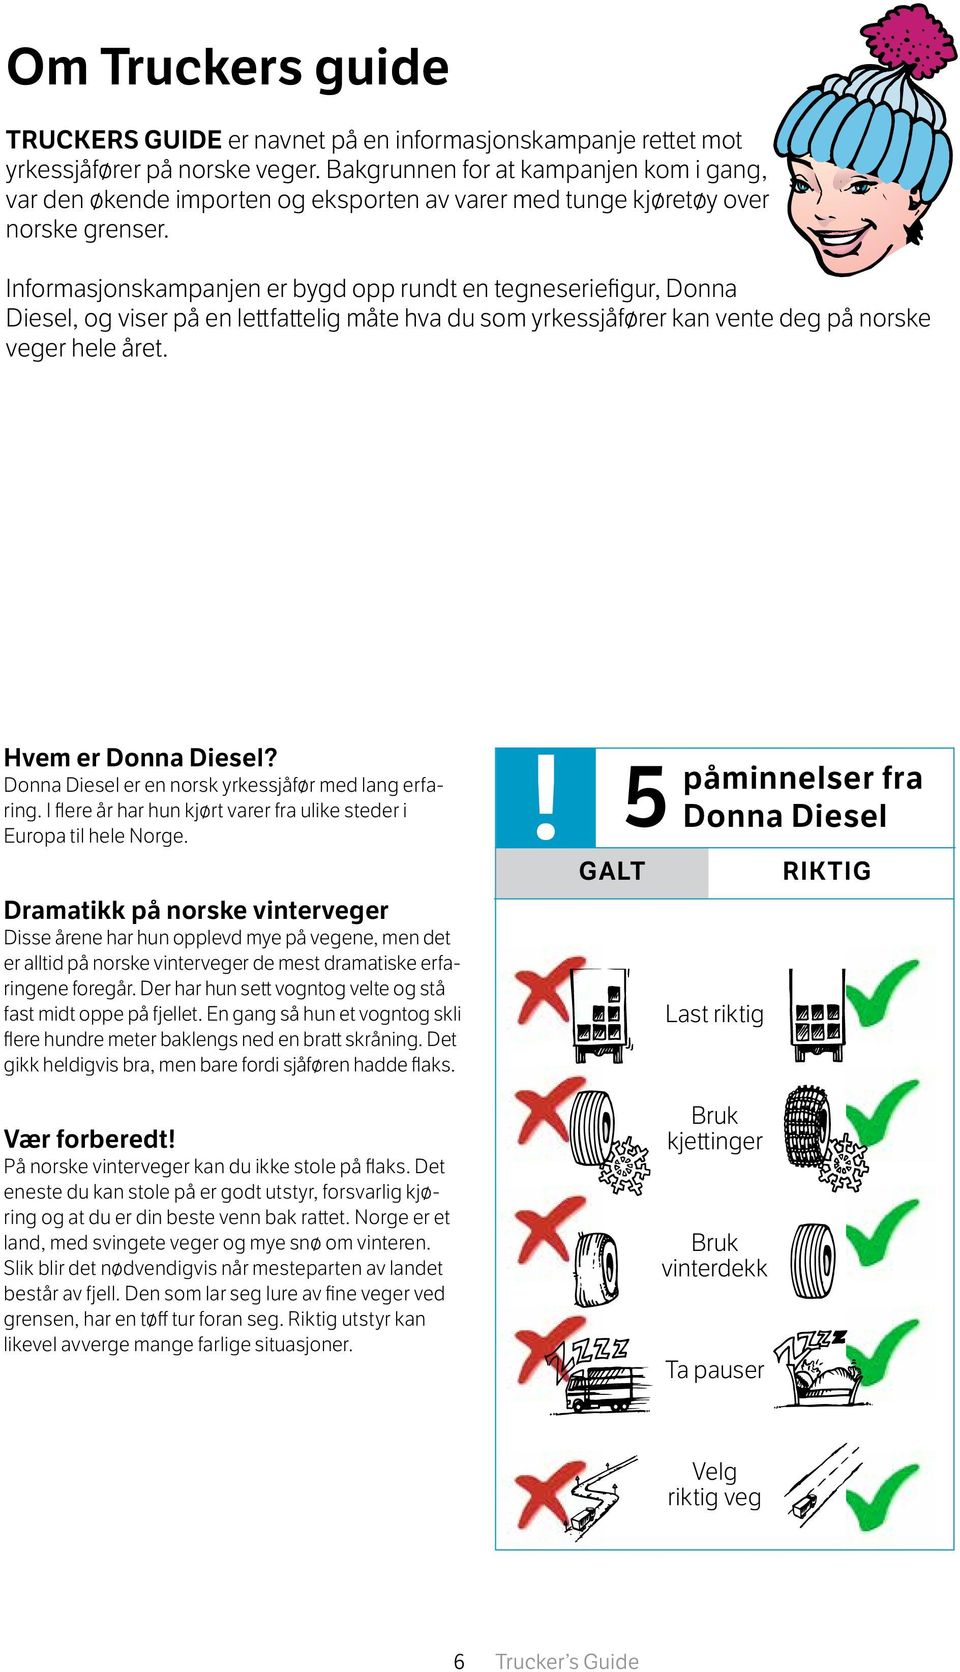 Informasjonskampanjen er bygd opp rundt en tegneseriefigur, Donna Diesel, og viser på en lettfattelig måte hva du som yrkessjåfører kan vente deg på norske veger hele året. Hvem er Donna Diesel?